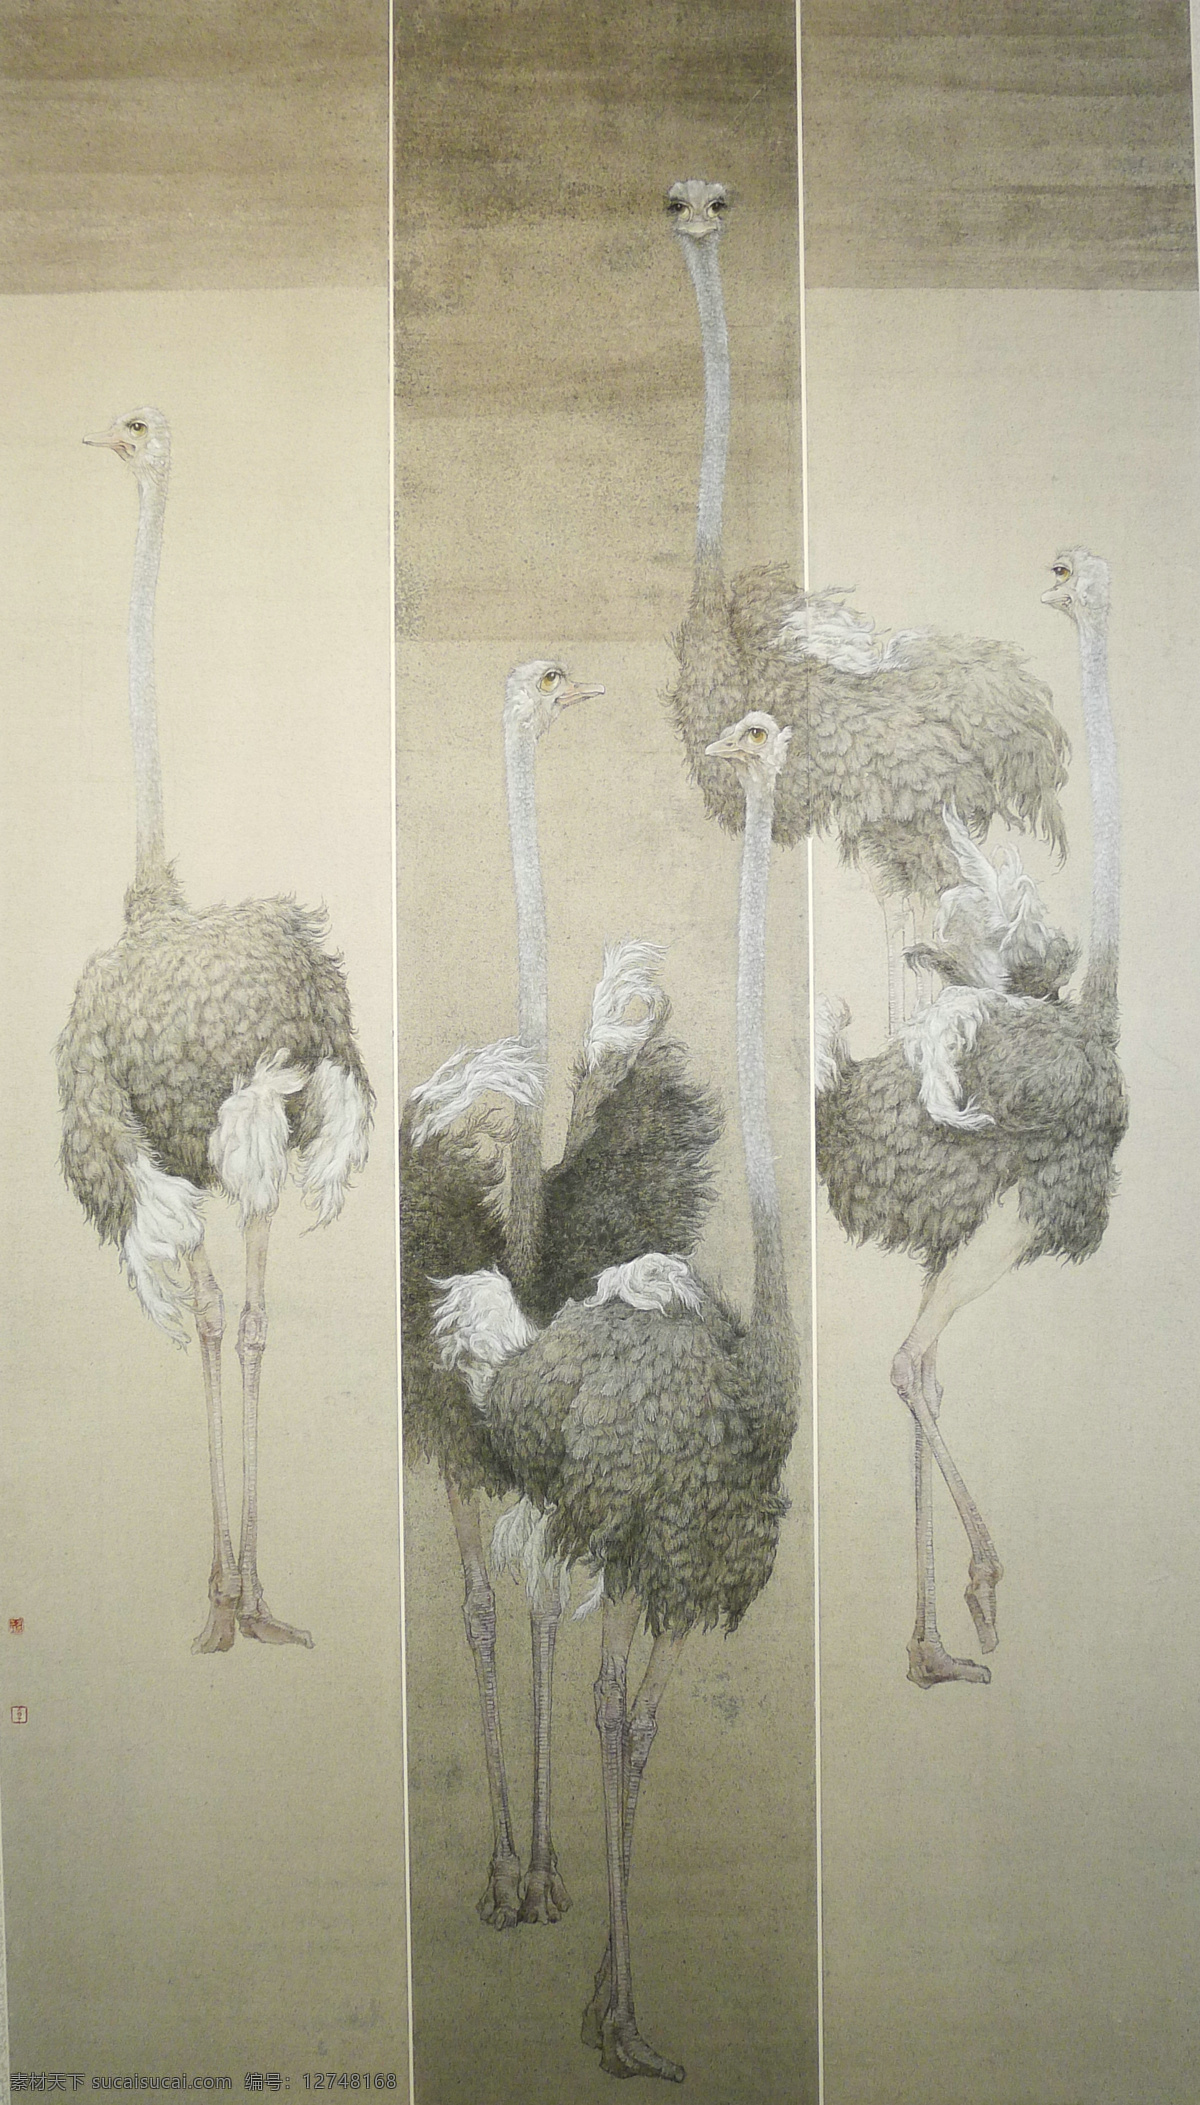 舞蹈家 中国画 工笔画 动物 鸵鸟 舞蹈 绘画书法 文化艺术